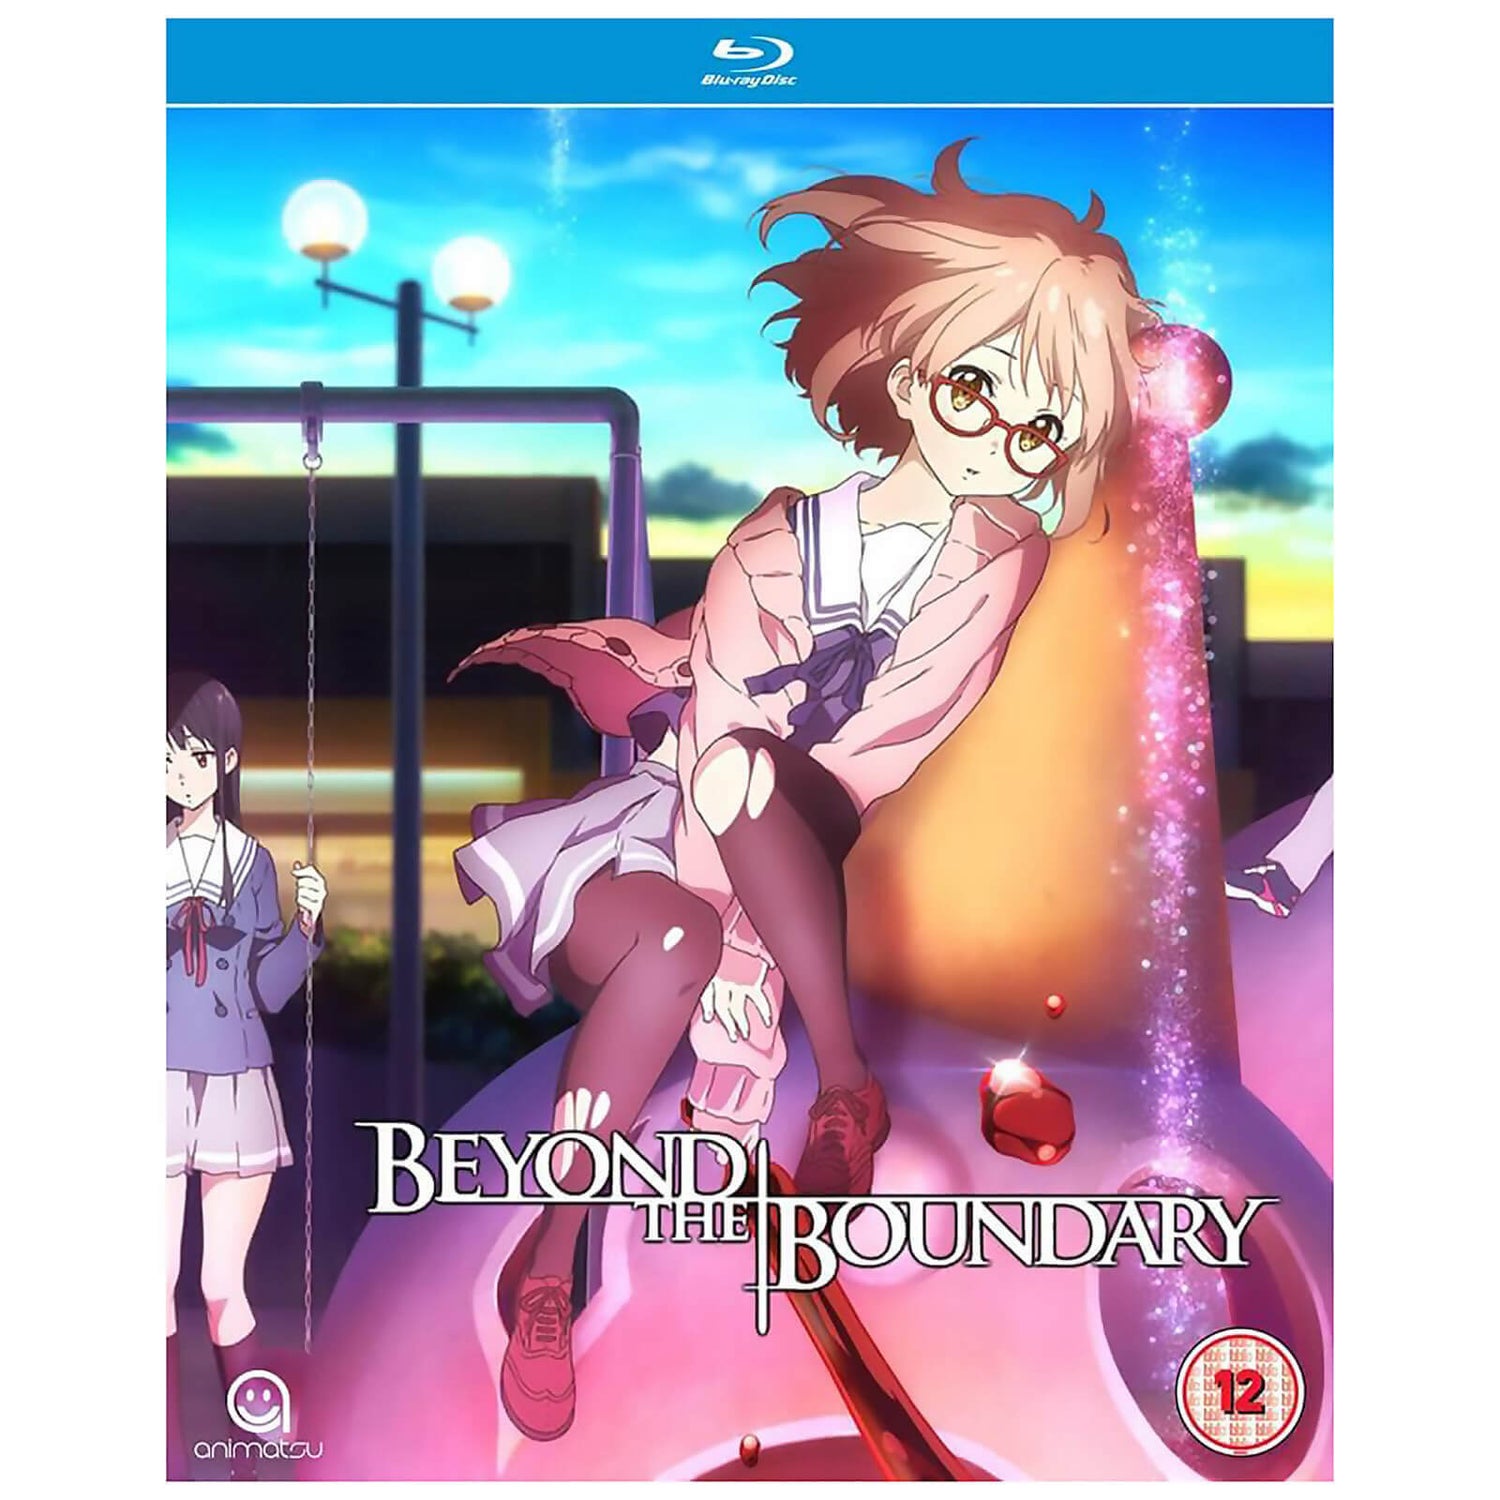 Beyond The Boundary - Complete Season Collection Blu-ray - Zavvi UK